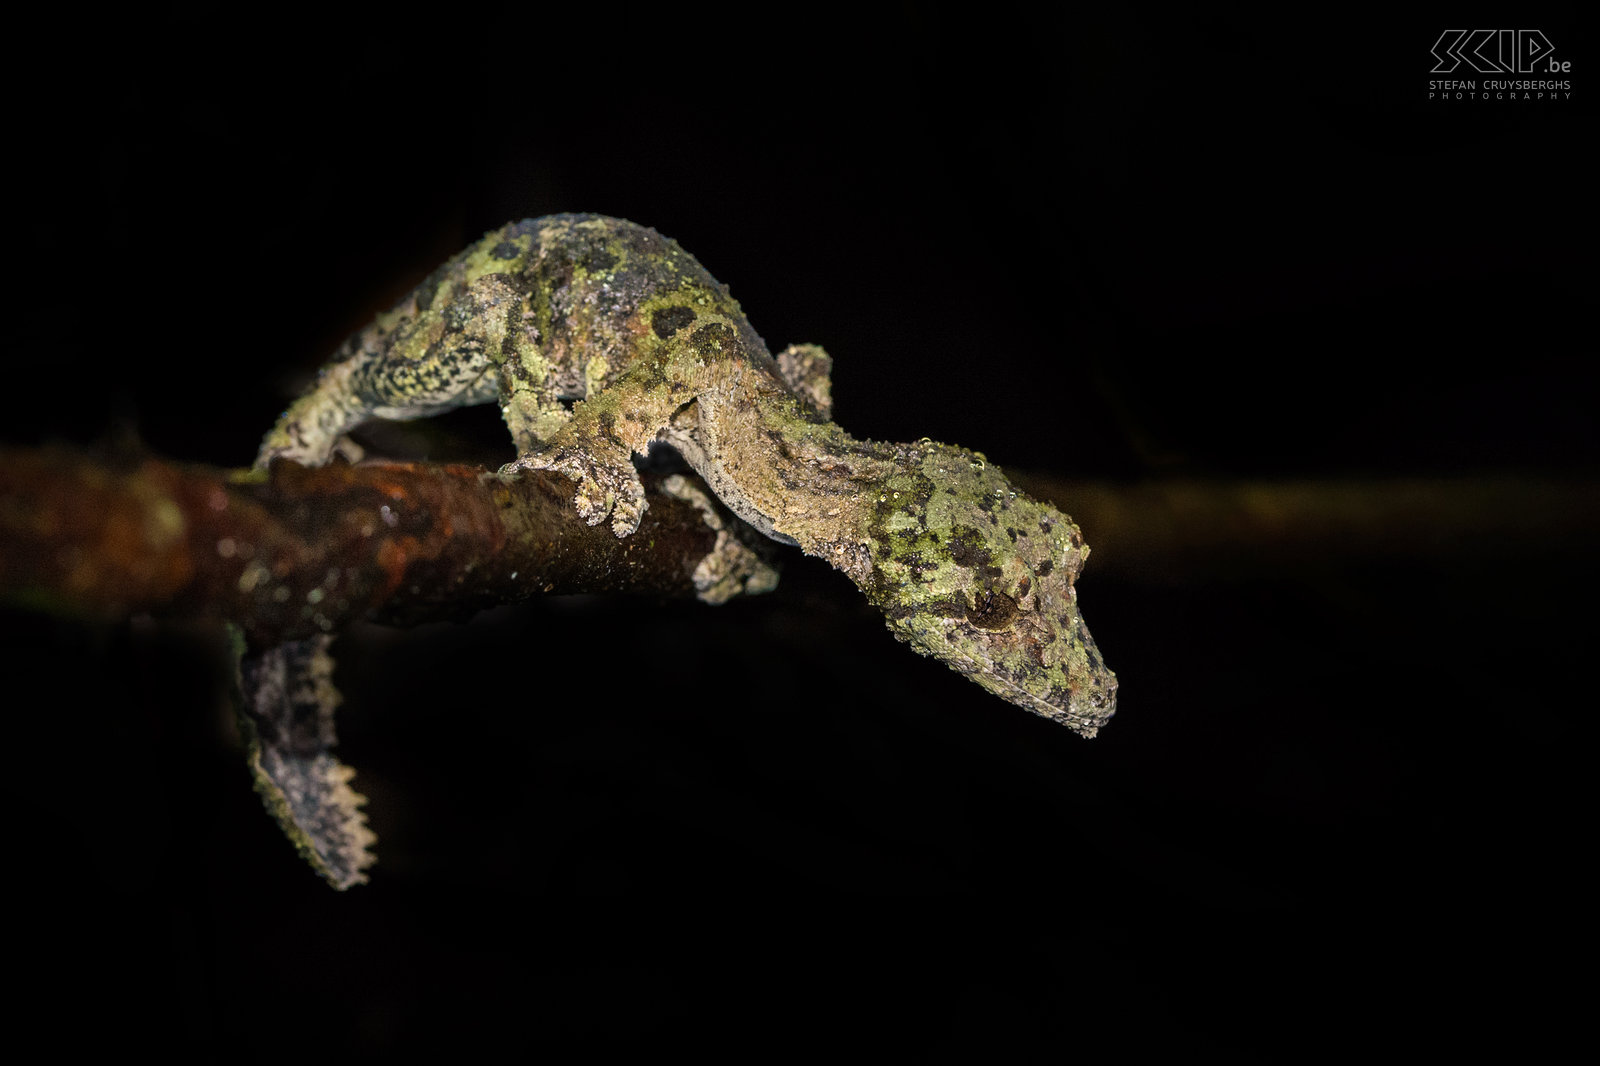 Andasibe - Bladstaartgekko Uroplatus sikorae (Mossy leaf-tailed gecko) is een hagedis van de bladstaartgekko familie. Deze fascinerende nachtelijke gekko is endemisch in Madagaskar. Hij is 15 tot 20 centimeter lang. Deze gekko kan zijn huidskleur veranderen om zich aan zijn omgeving aan te passen en hij bezit huidflappen die uitgeklapt worden om z’n lichaamsvorm te maskeren. Overdag is het bijna onmogelijk om deze super gecamoufleerde gekko te vinden. We vonden deze soort tijdens een nachtwandeling in het private Mitsinjo reservaat in de buurt van het Nationaal Park Andasibe Mantadia. Stefan Cruysberghs